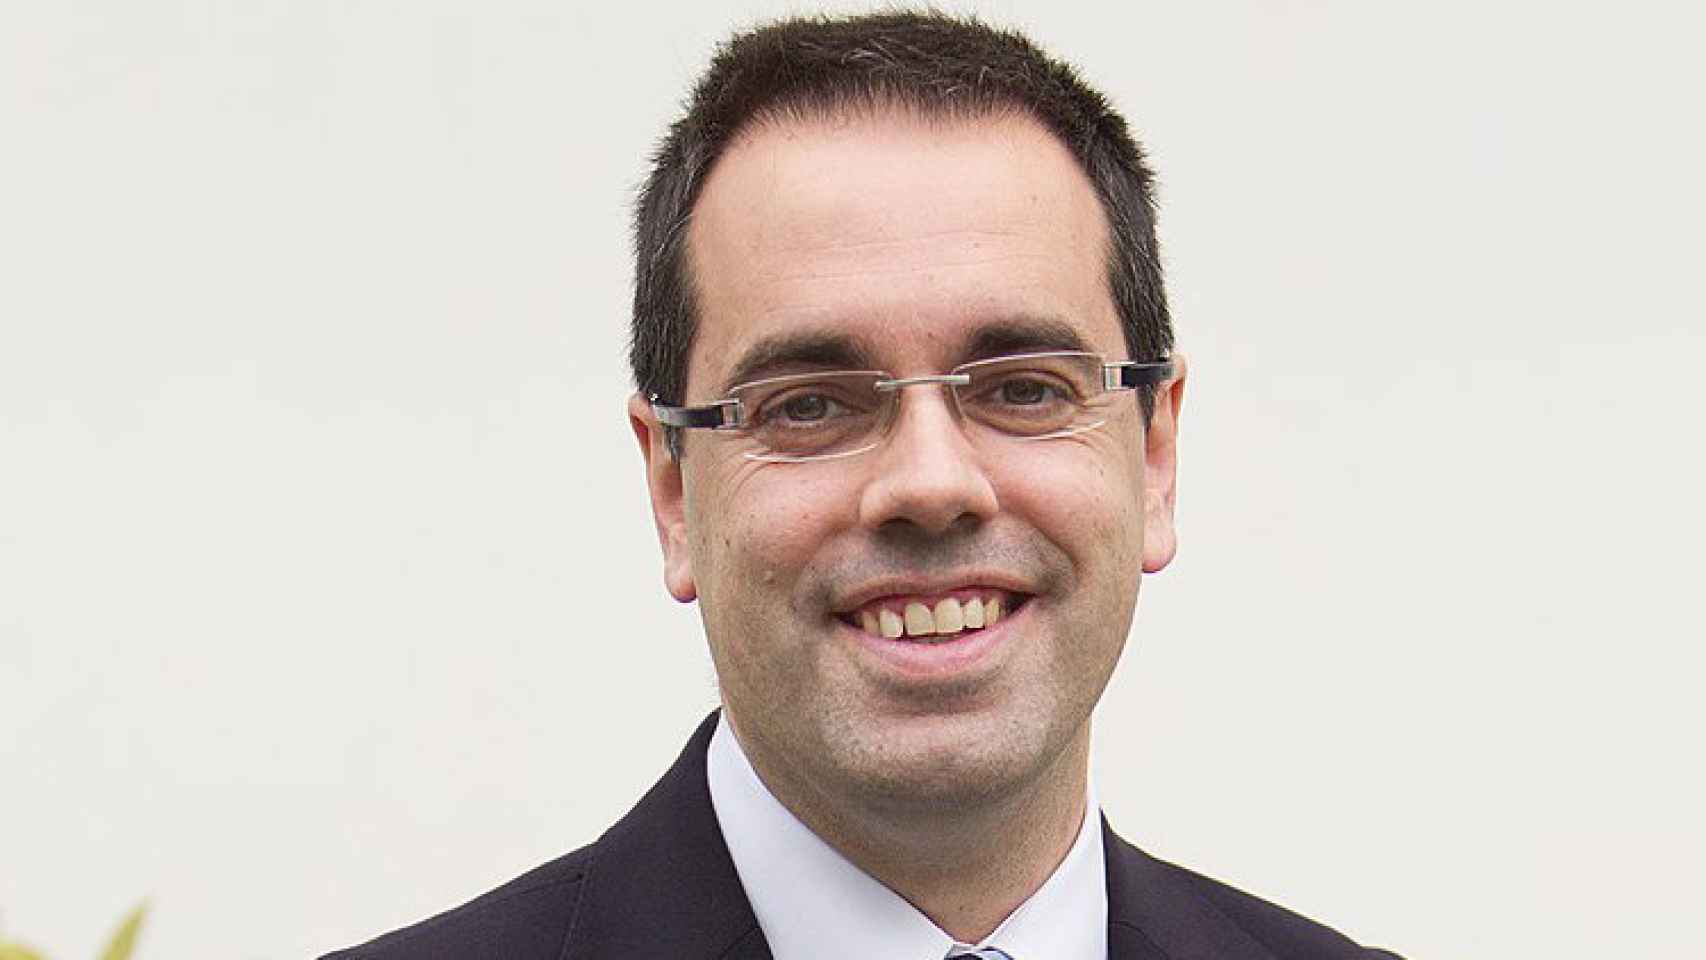 Carles Sala, abogado y exsecretario de vivienda del Govern / Flickr